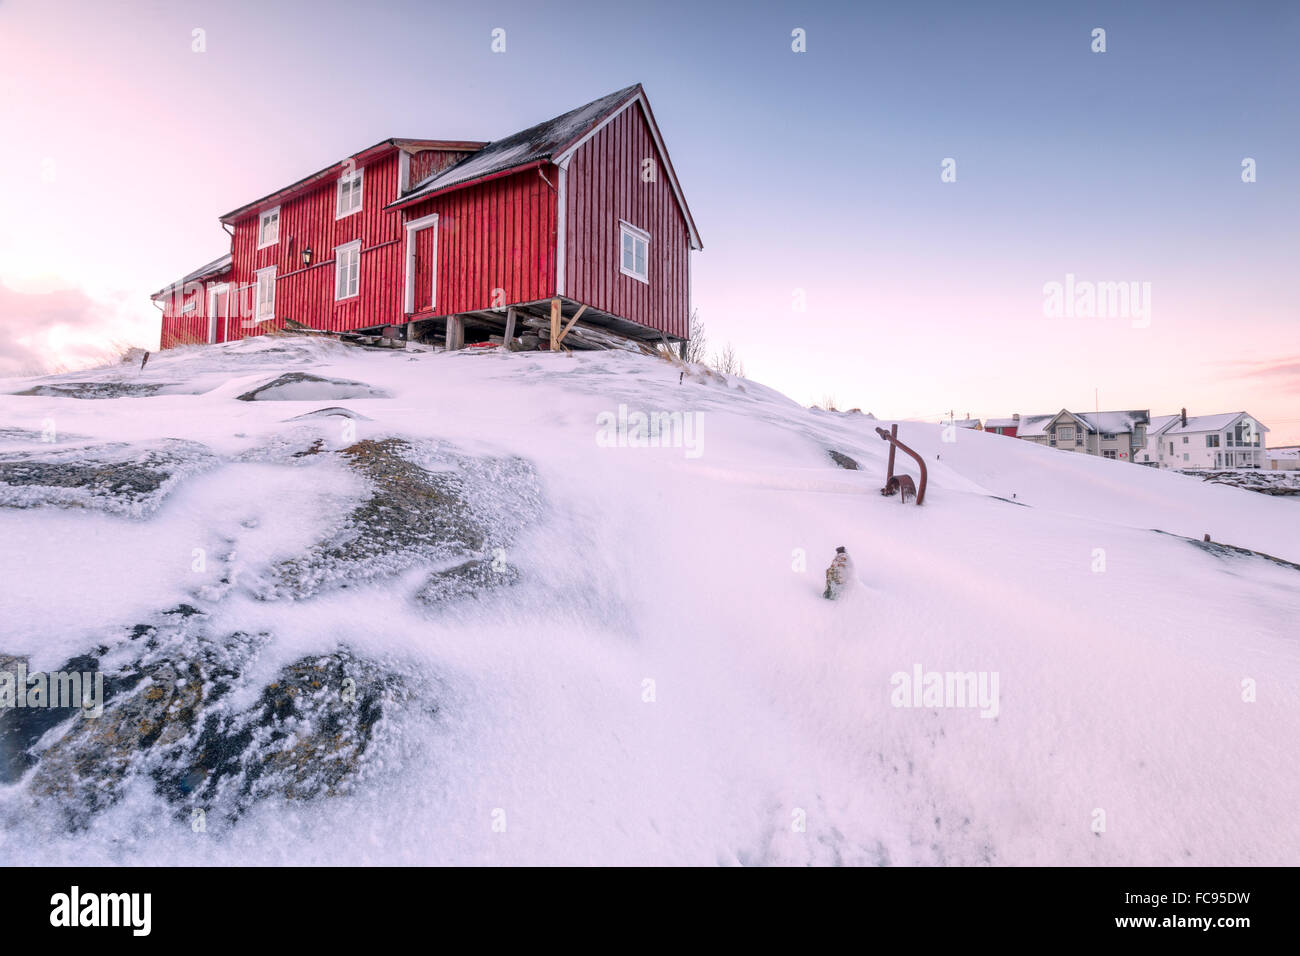 Rosa Himmel auf dem typischen roten Haus der Fischer (Rorbu), Henningsvær, Lofoten-Inseln, Arktis, Nord-Norwegen, Skandinavien Stockfoto